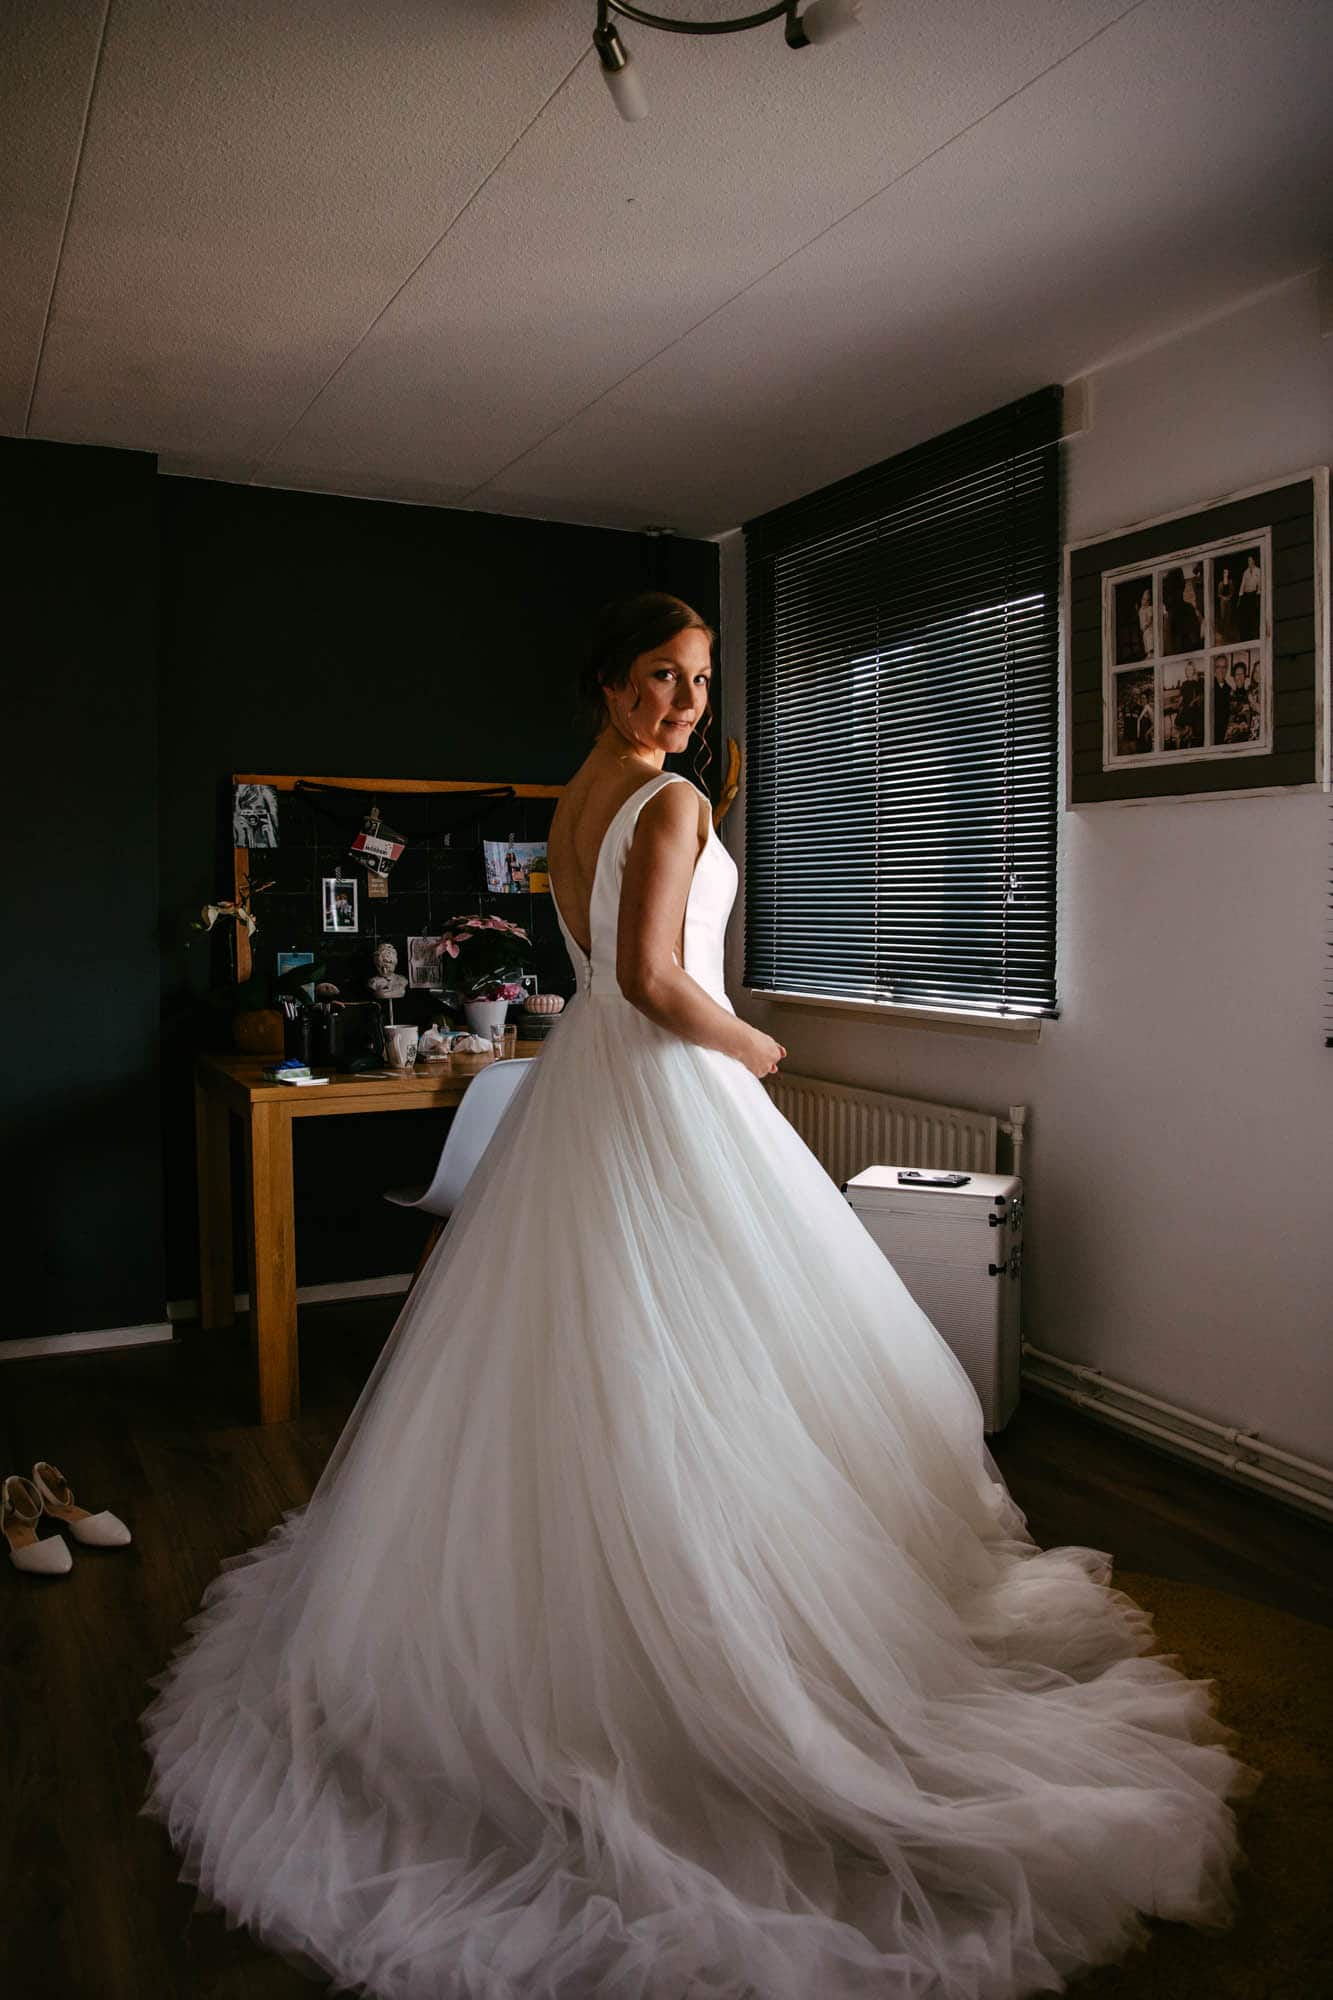 Een bruid in een trouwjurk in een kamer.